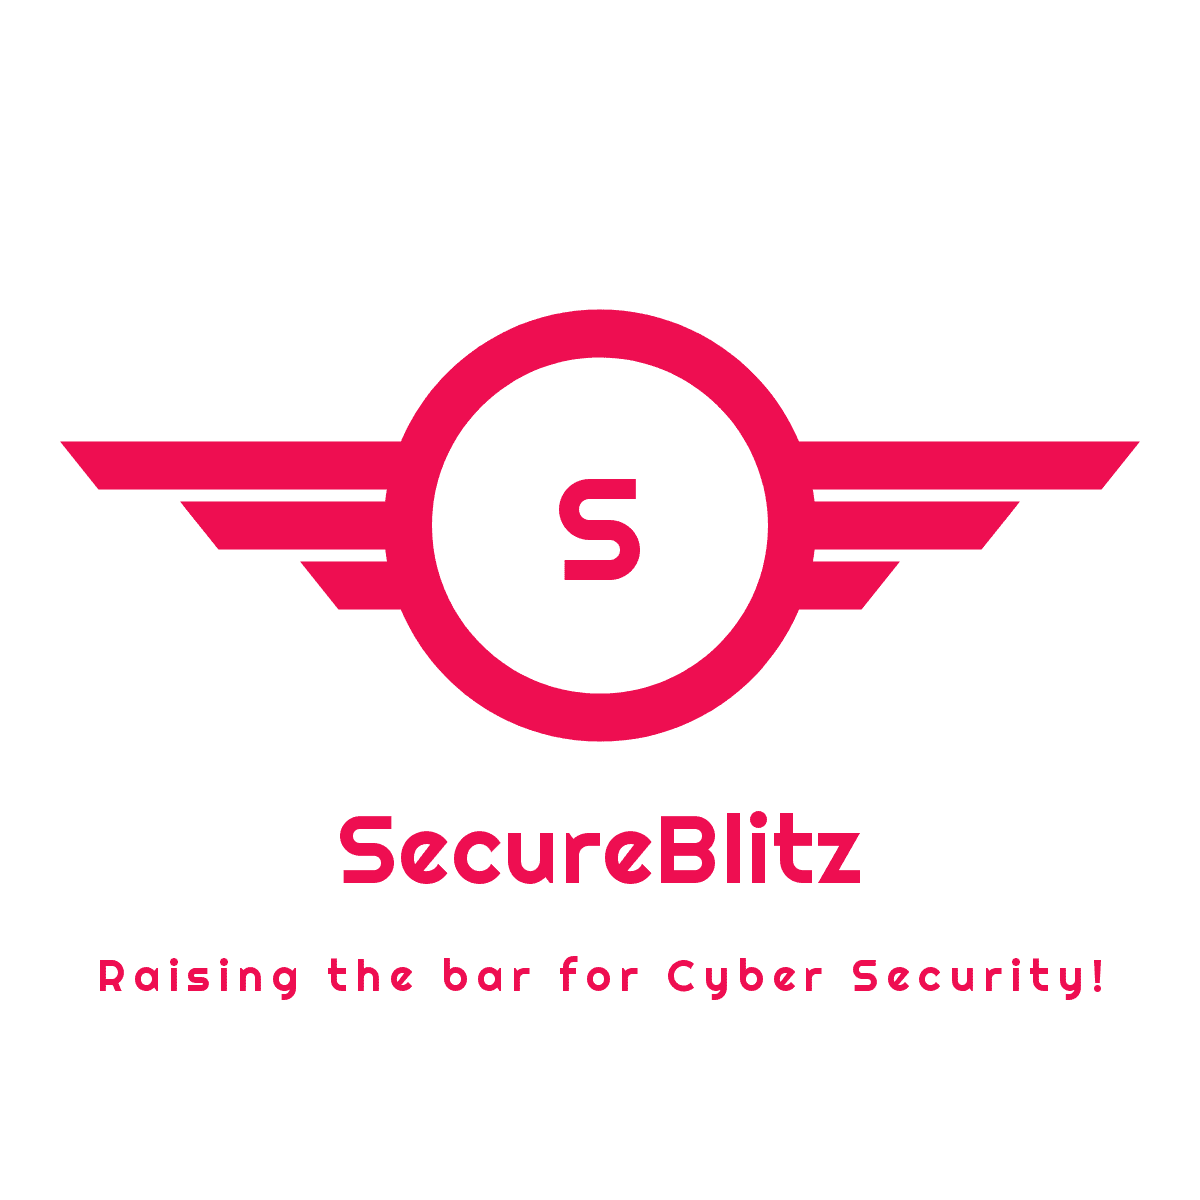 secureblitz logo